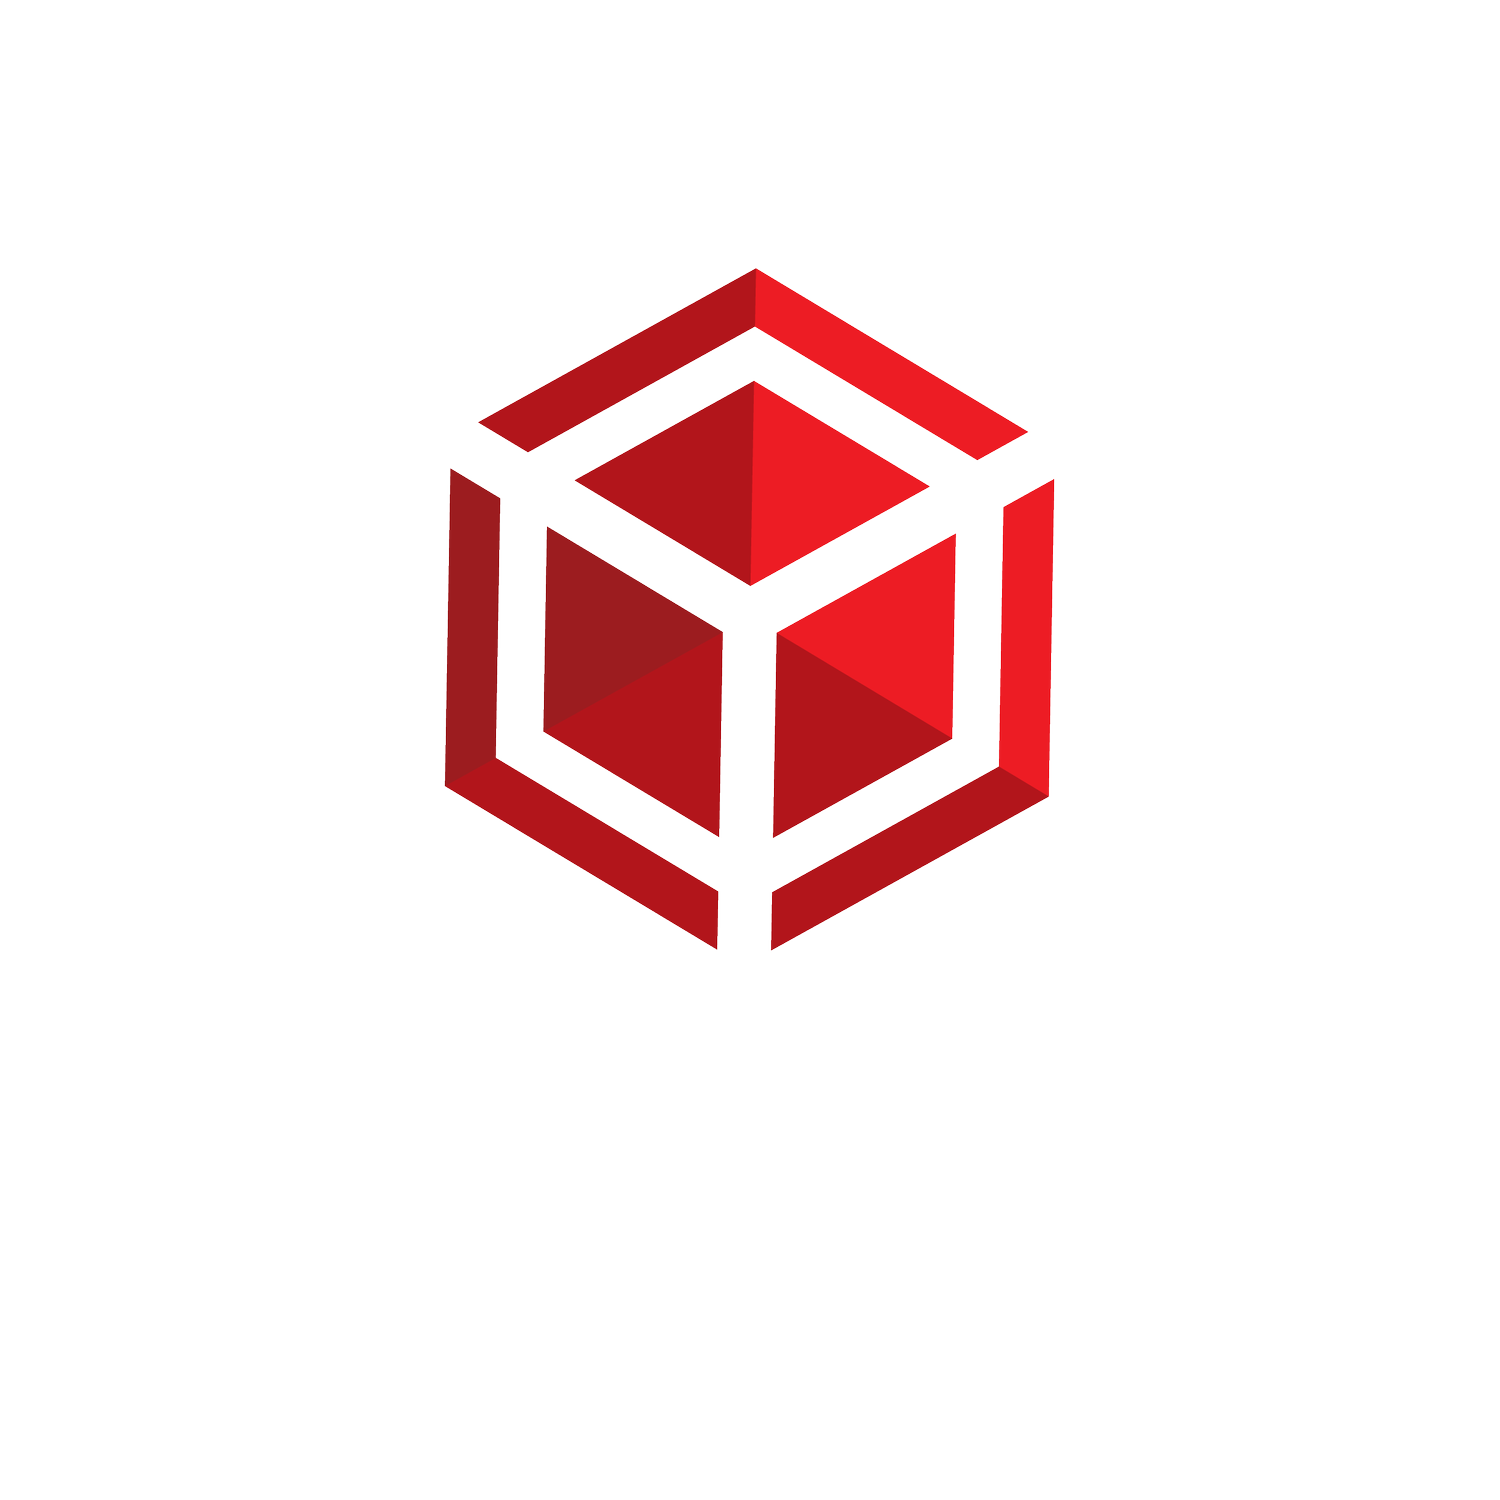 Repact